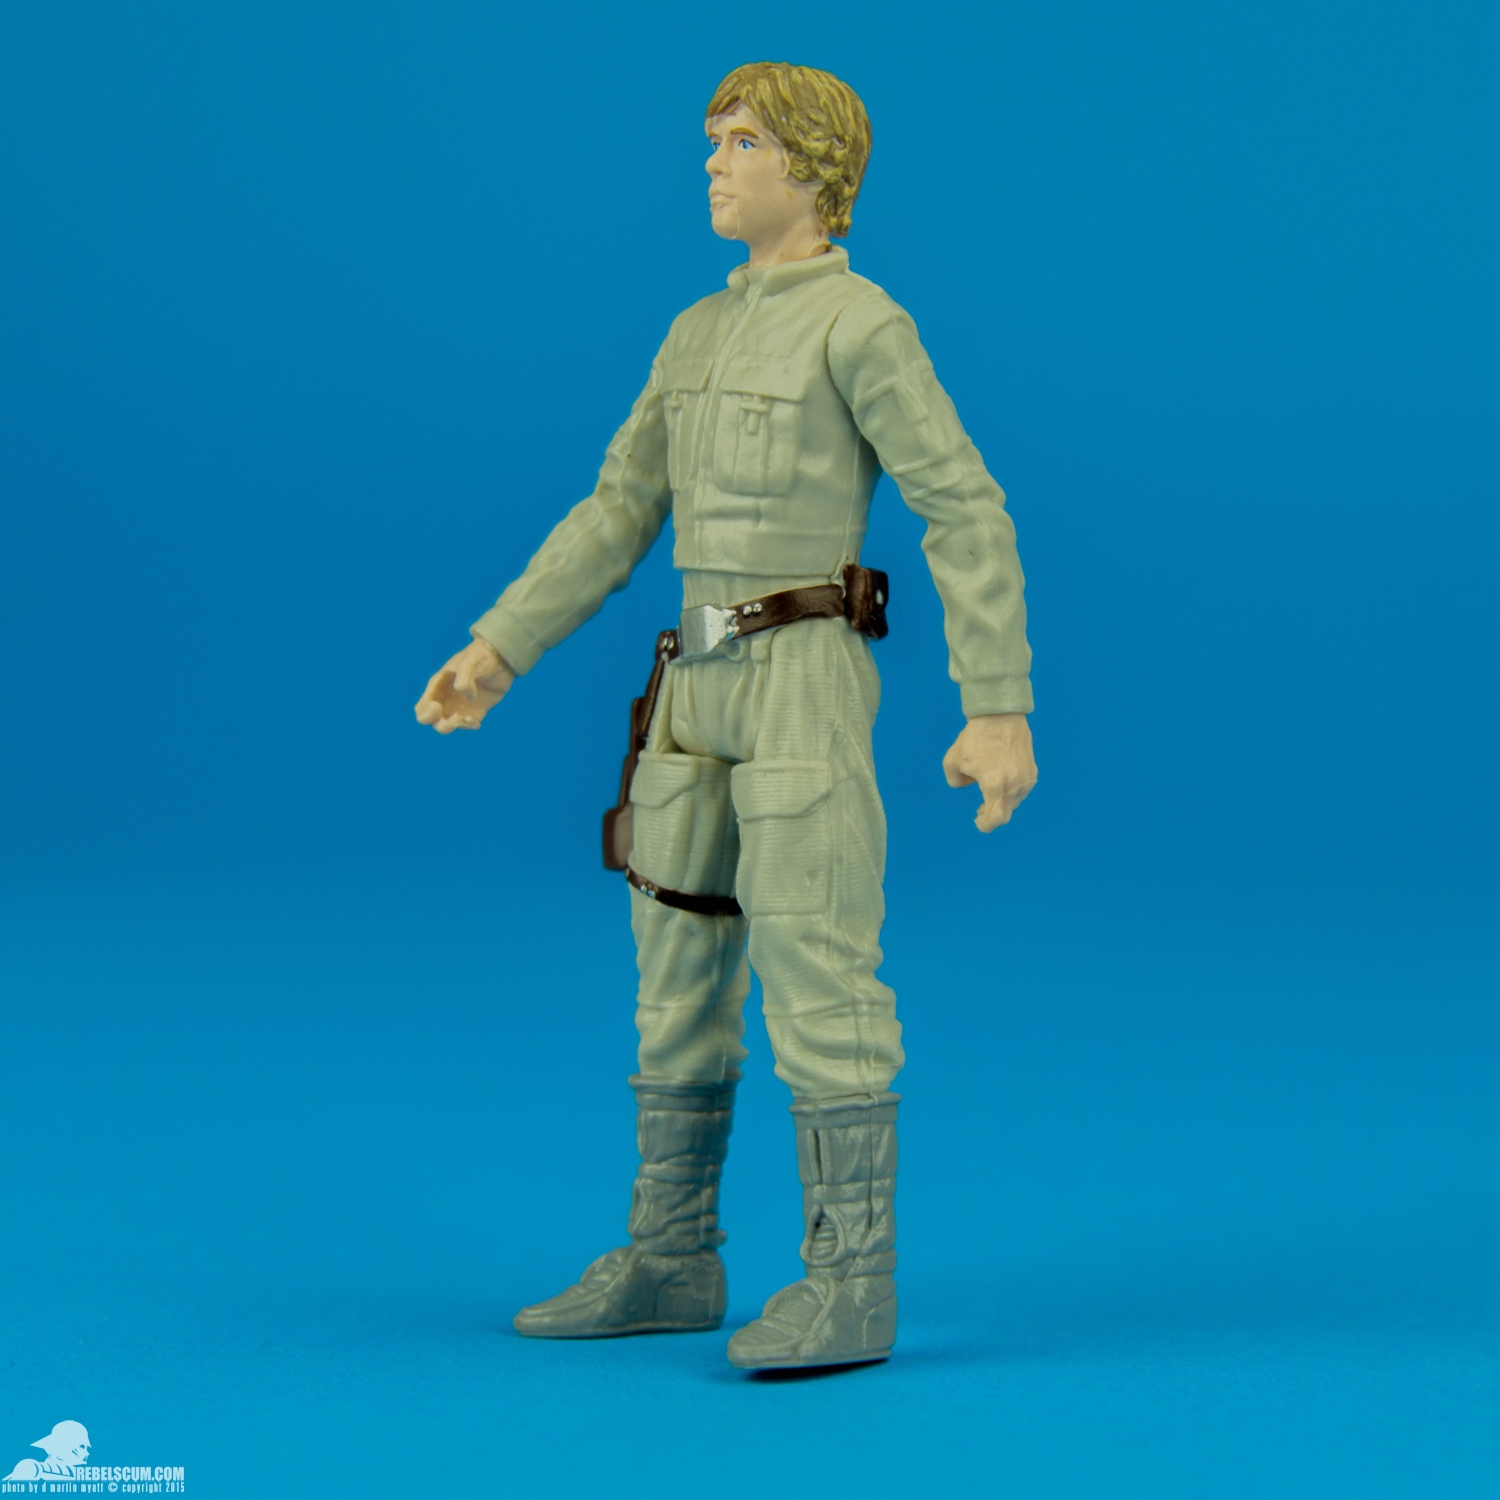 Luke-Skywalker-Star-Wars-The-Force-Awakens-Hasbro-003.jpg